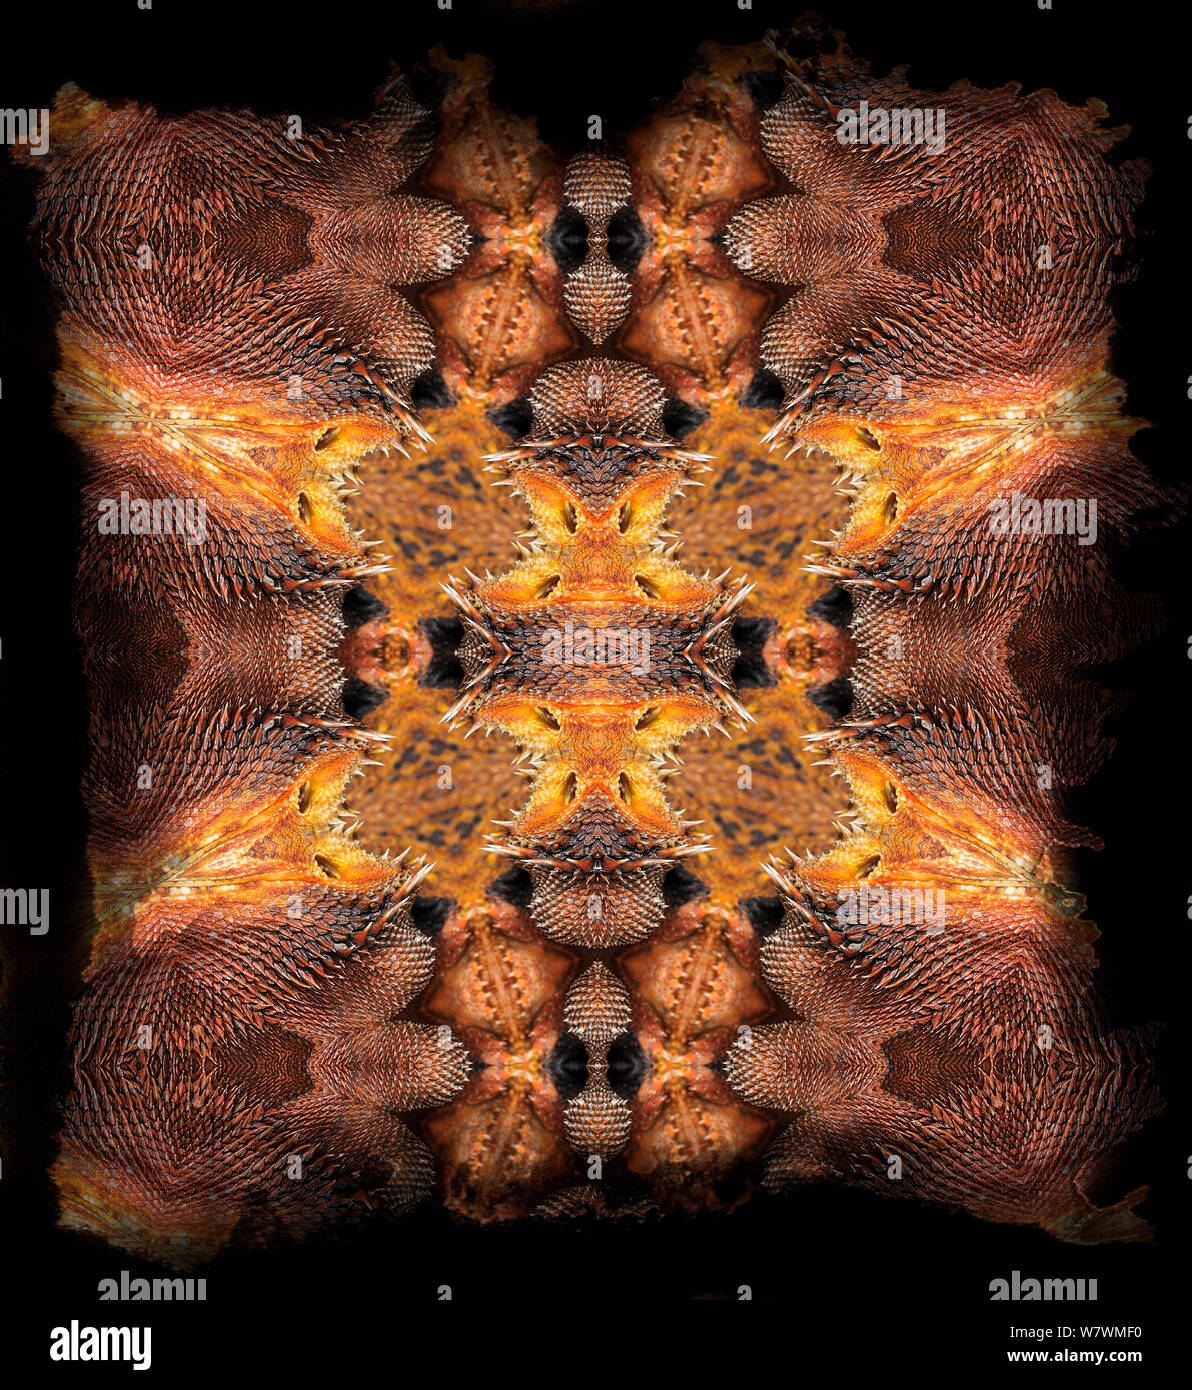 Motif kaléidoscope formé à partir de photo de dragon barbu (Pogona), y compris les balances pèse-personnes, de partout dans les oreilles. NAT GEO POUR SOUS EMBARGO JUSQU'À la fin de 2015 Banque D'Images